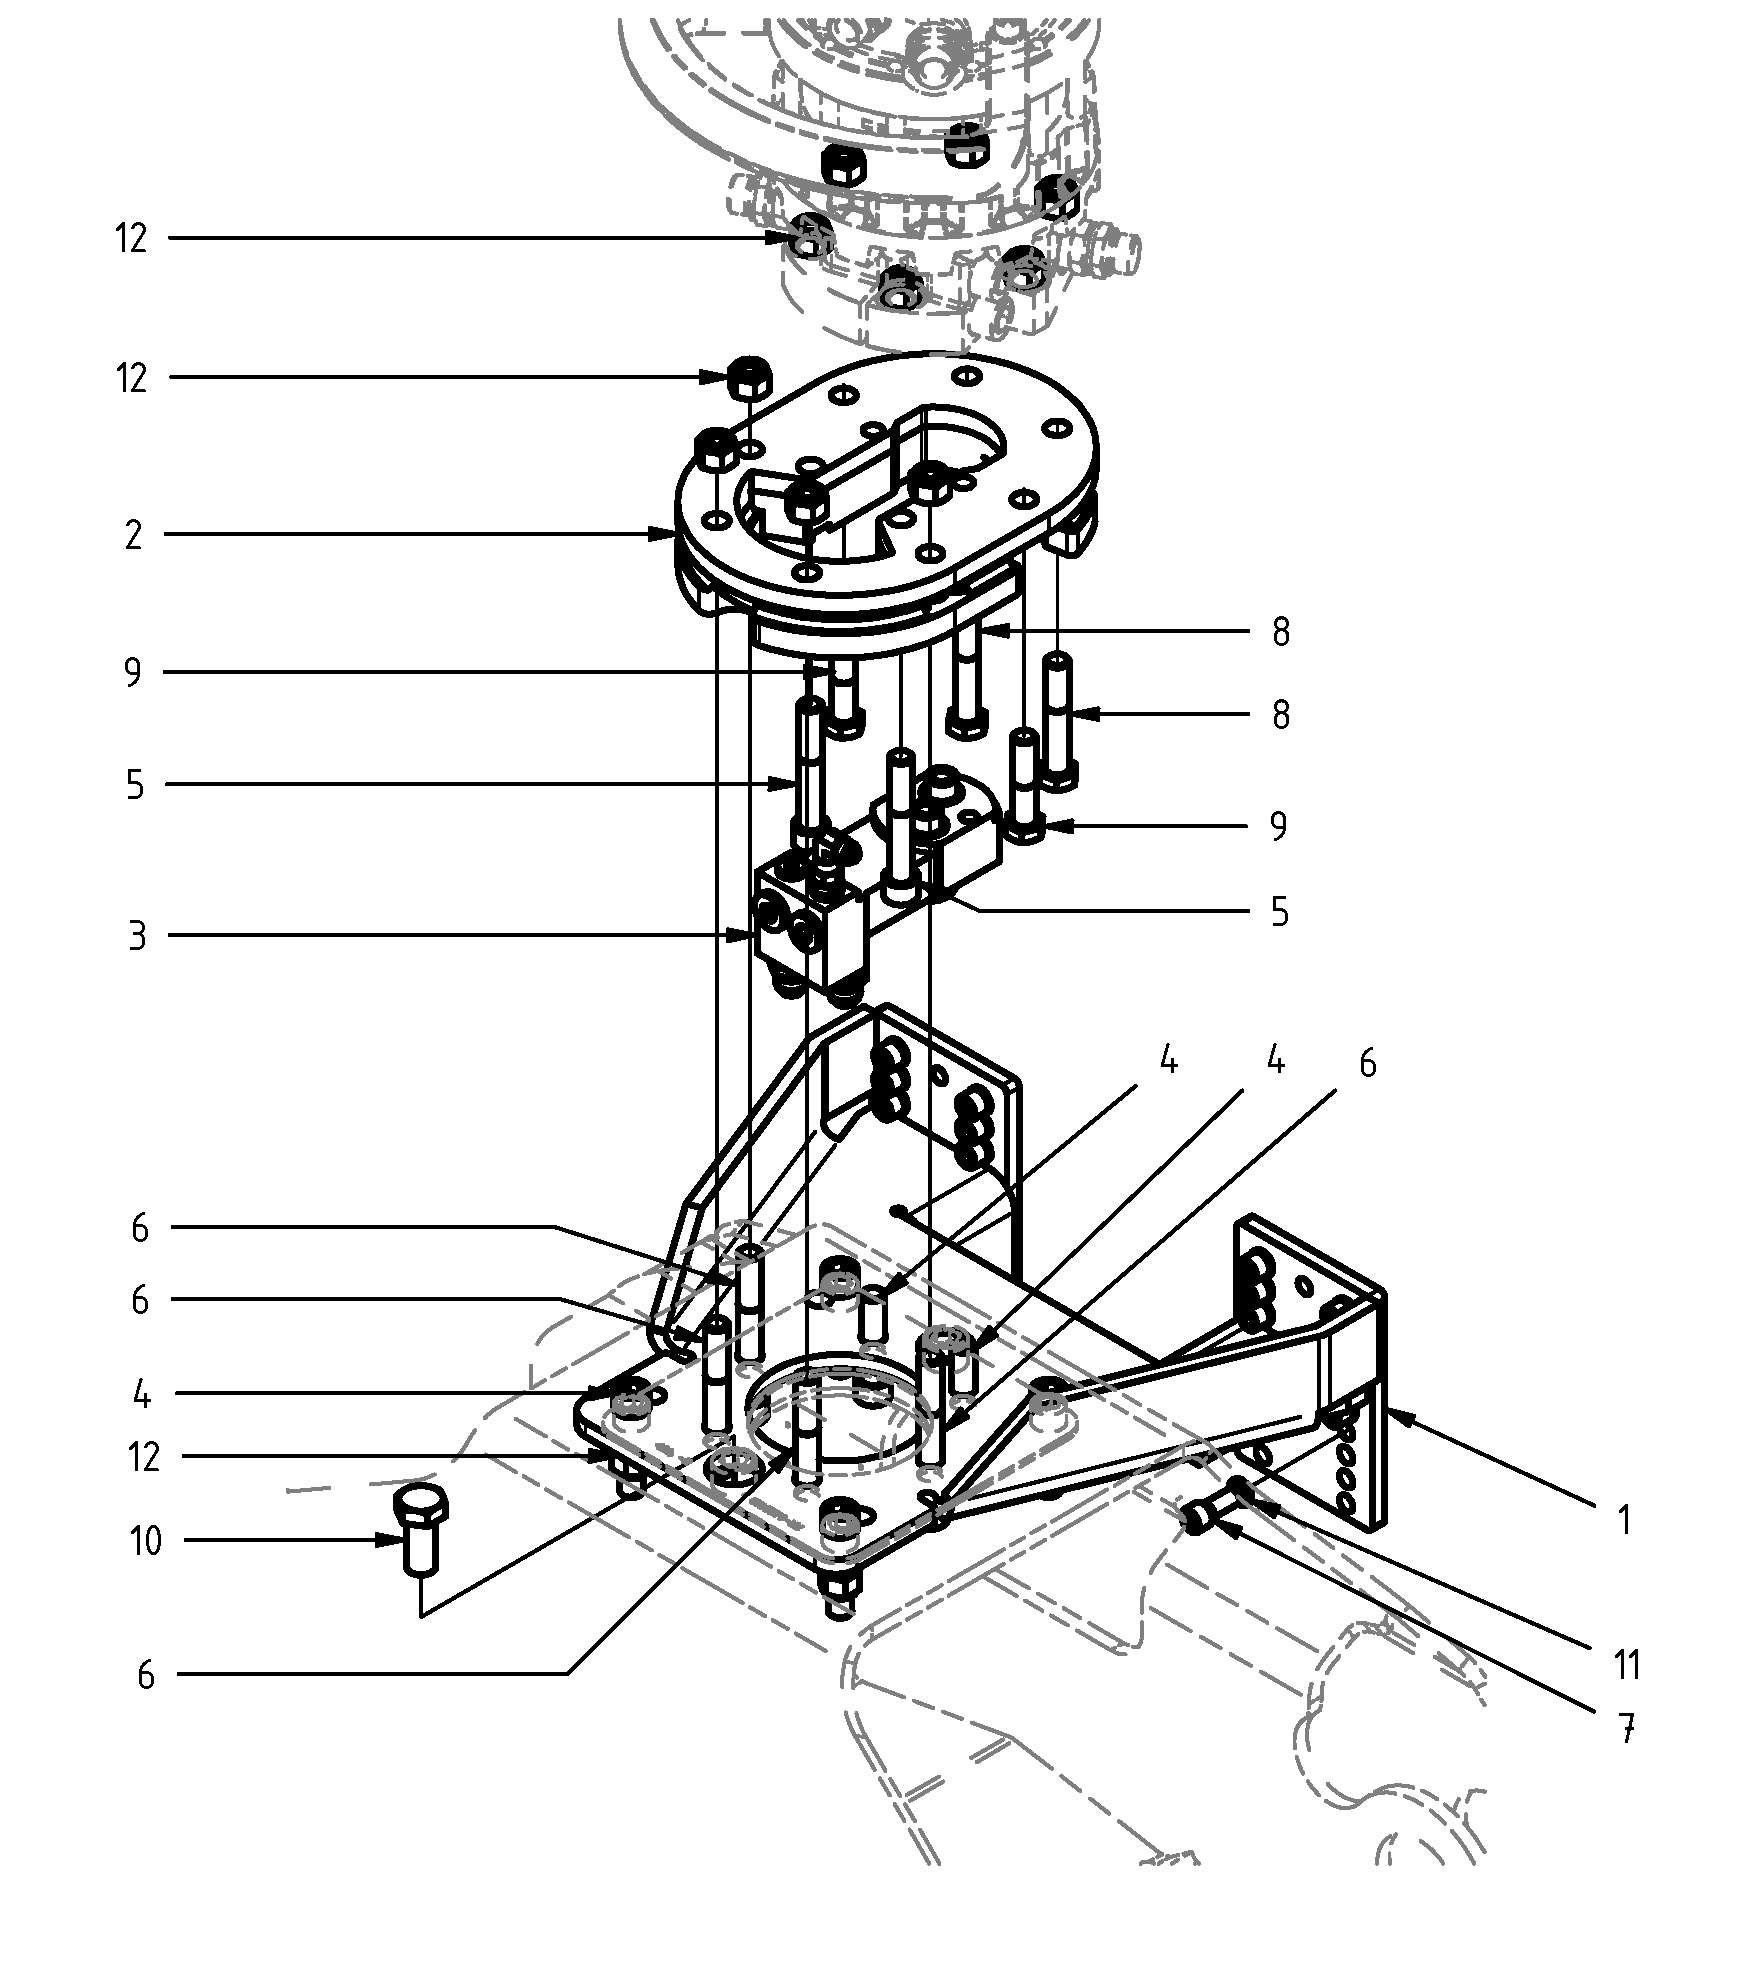 rotator mounting kit, Baltrotor mounting